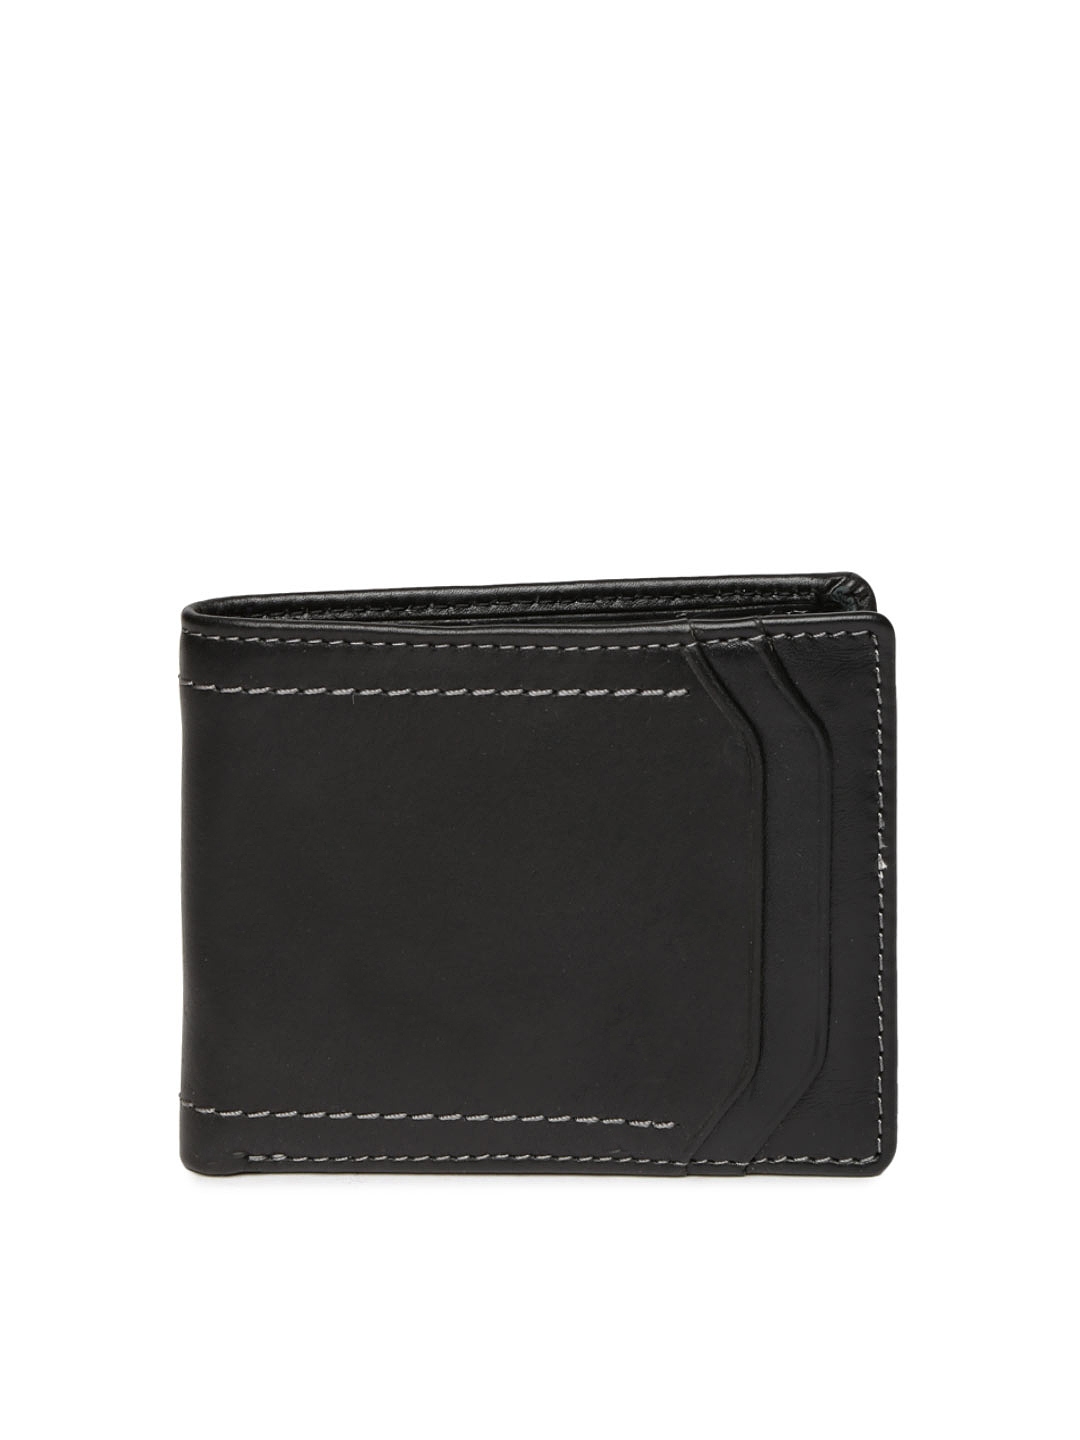 Buy WAC Men Black Leather Wallet - Wallets for Men 966115 | Myntra